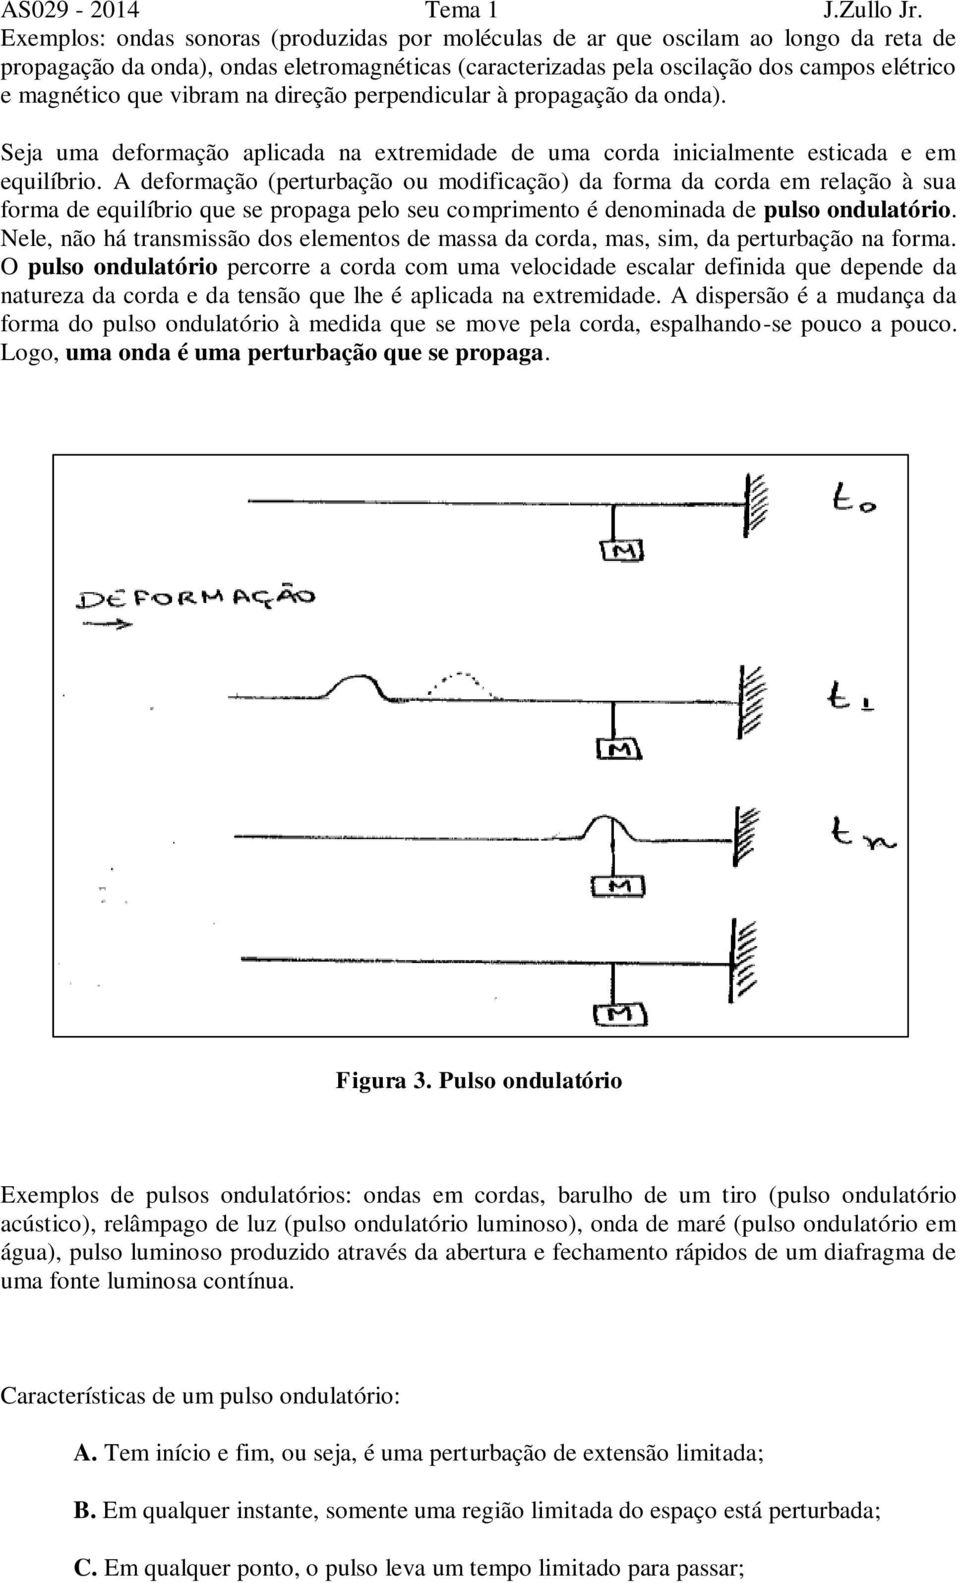 A deformação (perturbação ou modificação) da forma da corda em relação à sua forma de equilíbrio que se propaga pelo seu comprimento é denominada de pulso ondulatório.